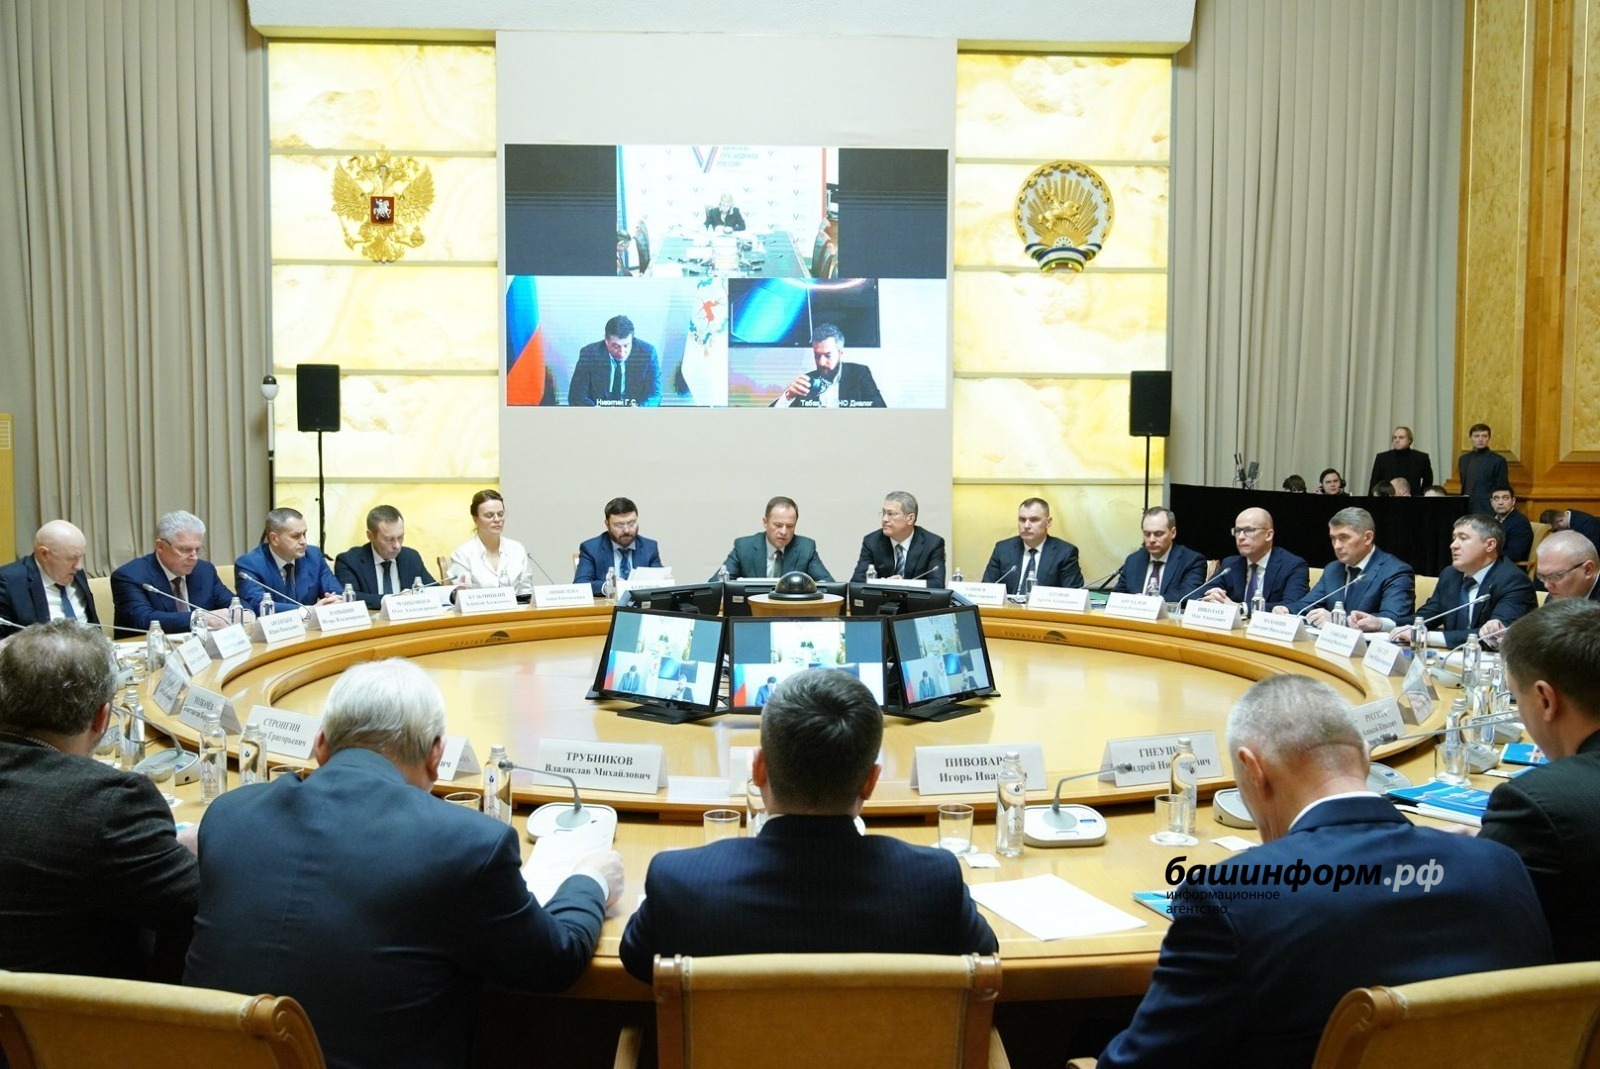 Глава Башкирии Радий Хабиров считает, что доверие людей является ключевым показателем открытости власти